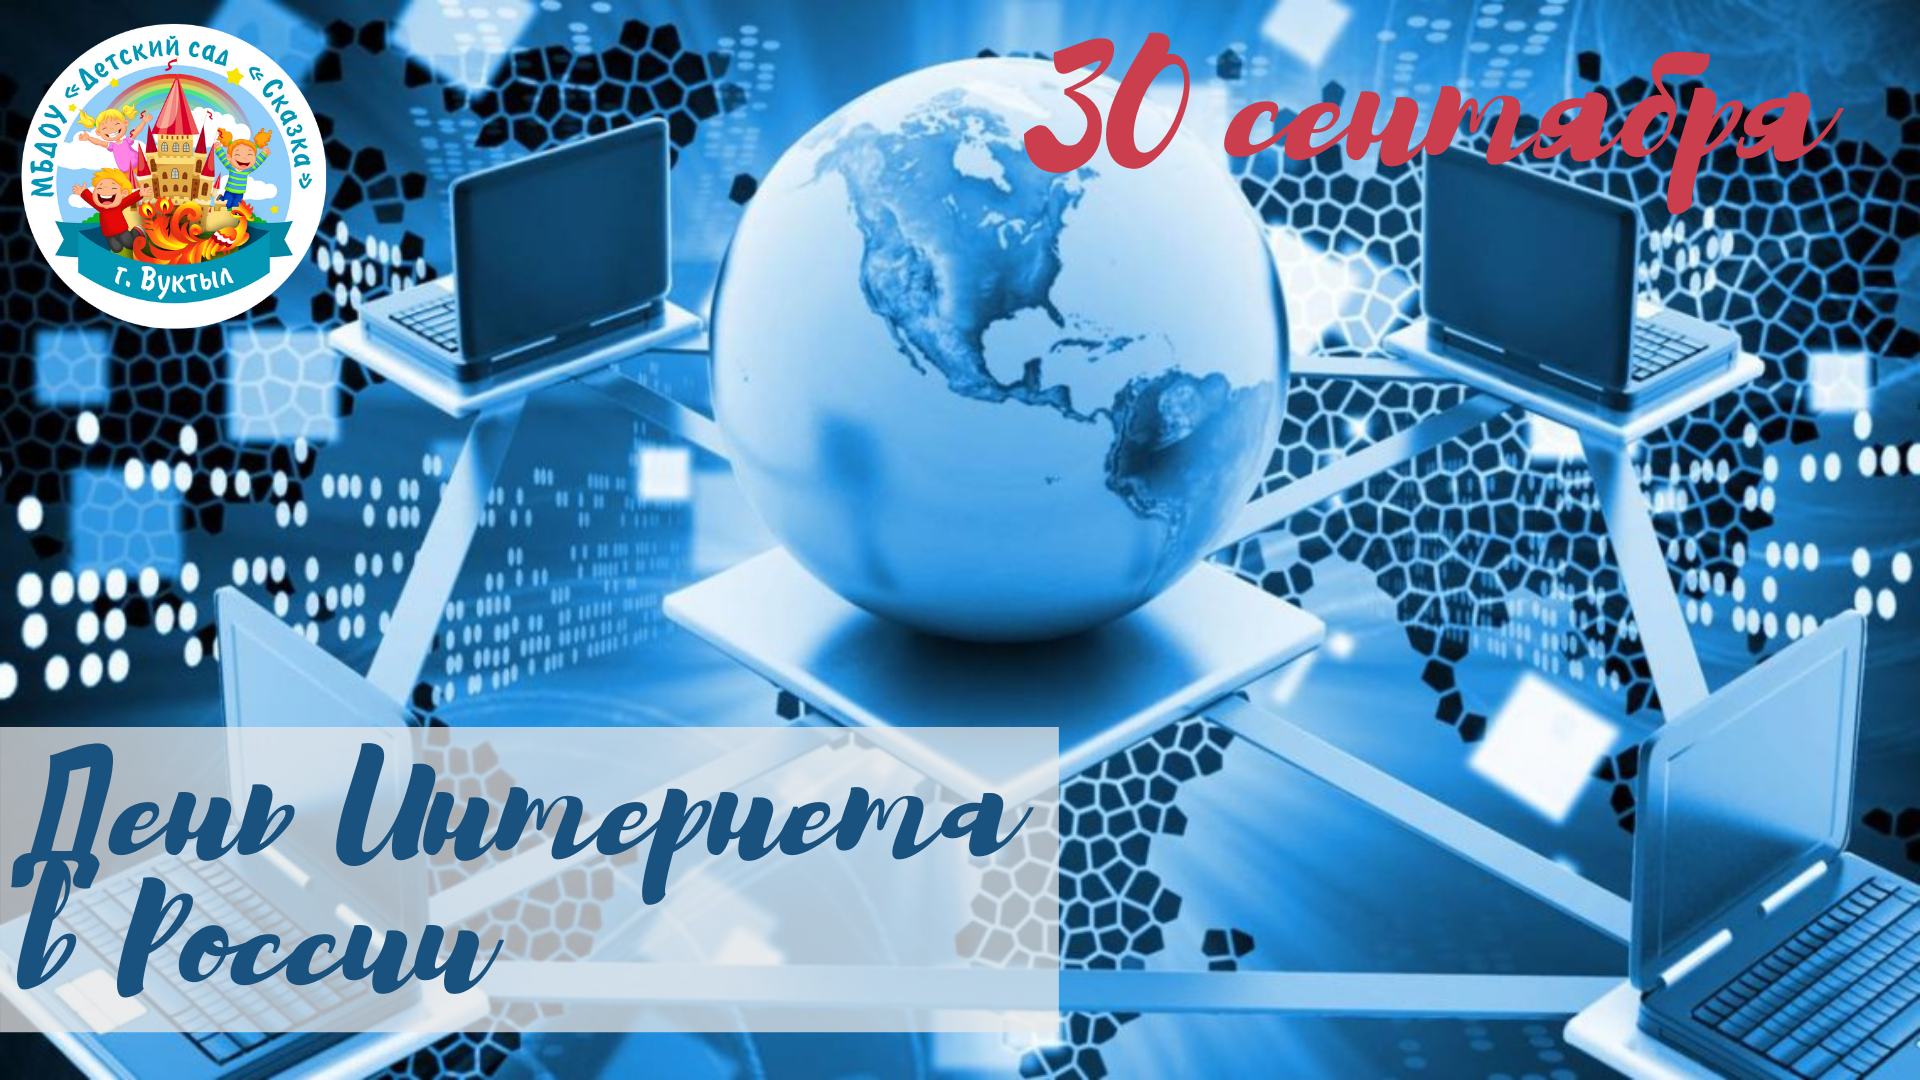 День интернета в России. Поздравление с днем интернета. Всемирный день интернета. 30 Сентября день интернета.